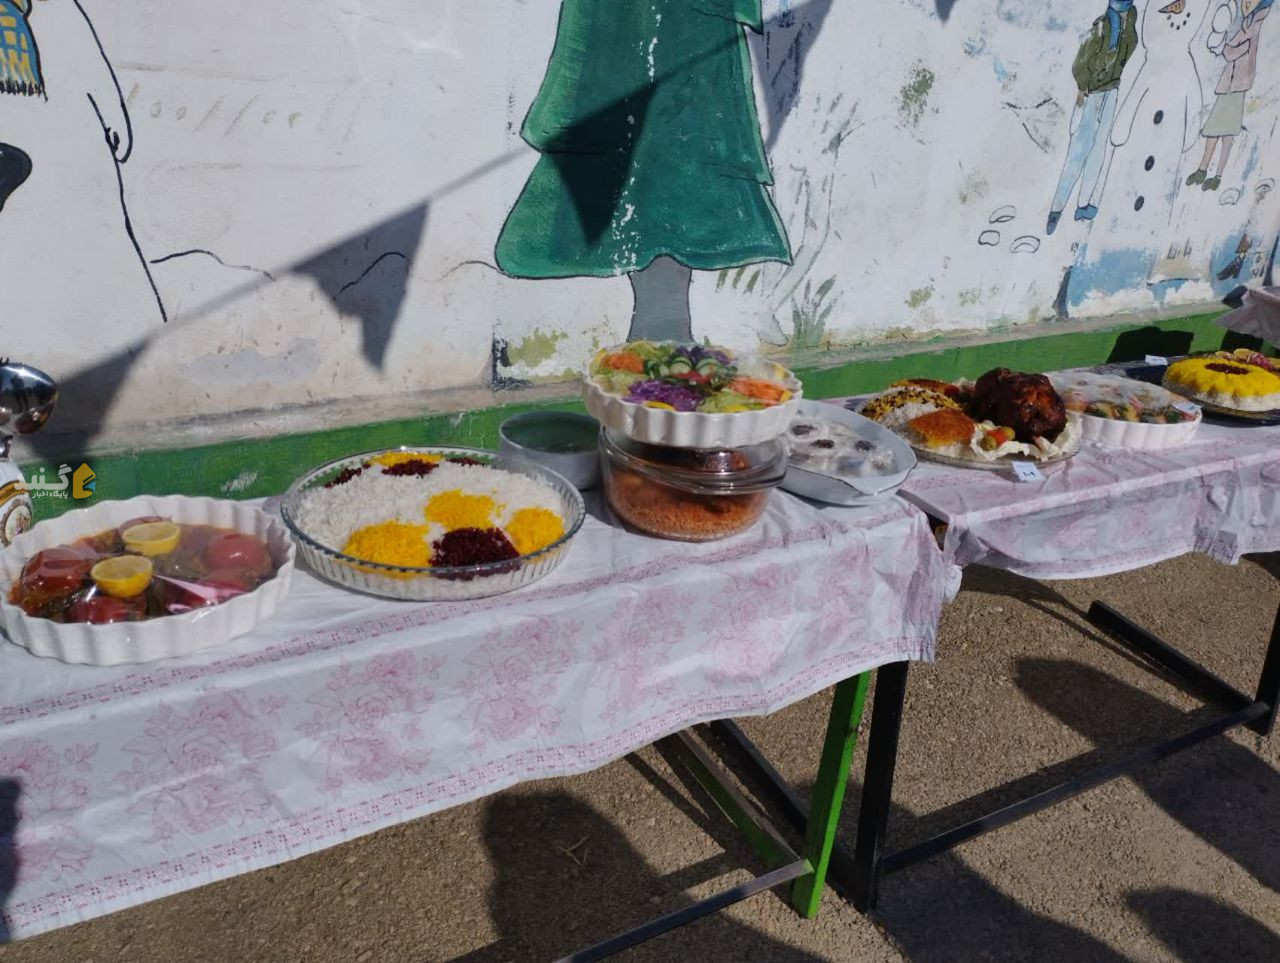 شور و نشاط بانوان روستایی با نوآوری برپایی جشنواره غذاهای سنتی در روستای عطابهلکه + گزارش تصویری